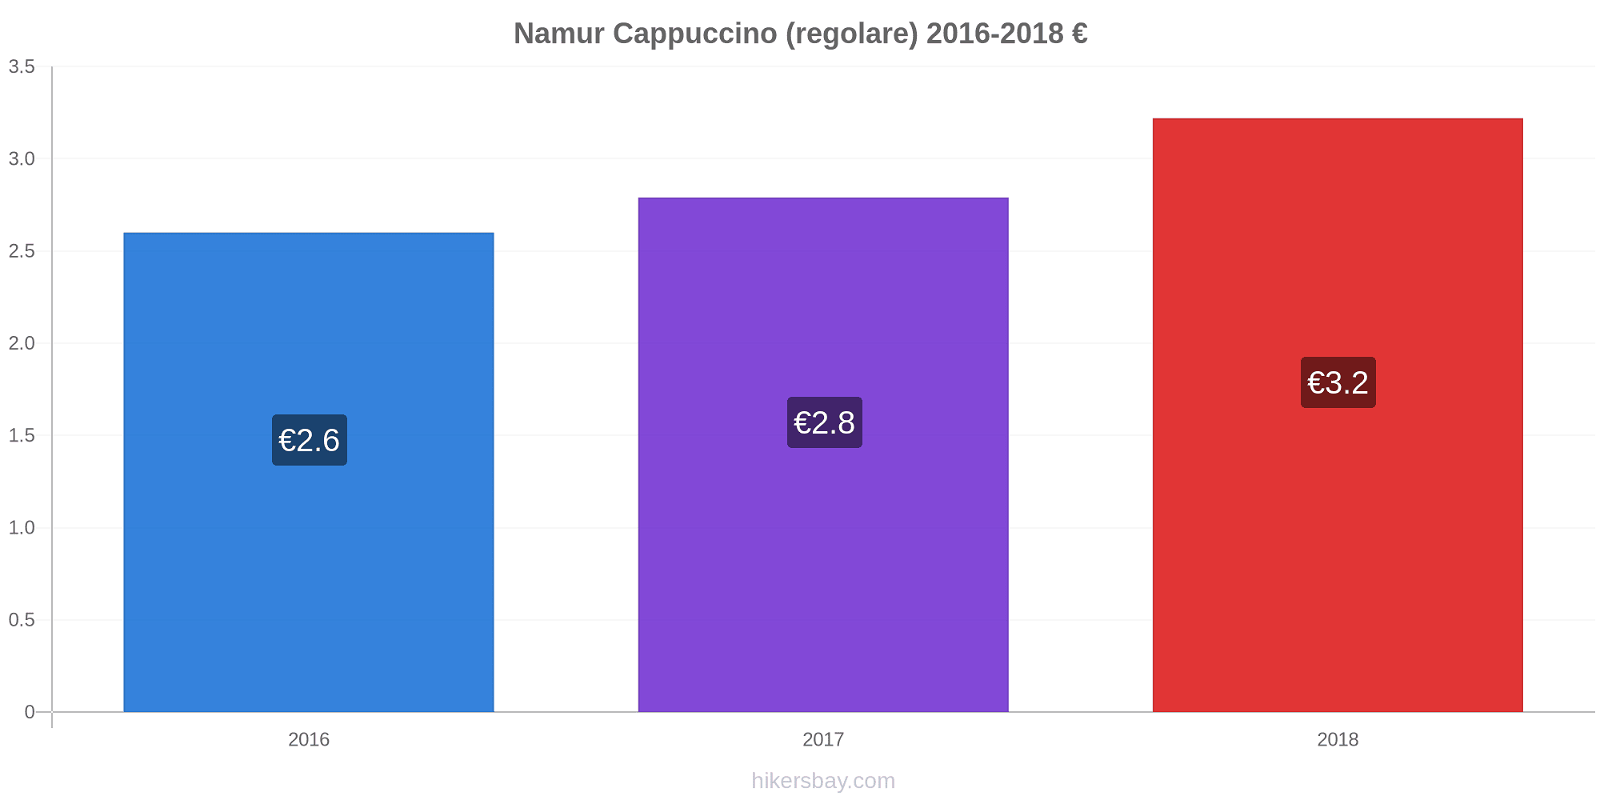 Namur variazioni di prezzo Cappuccino (normale) hikersbay.com